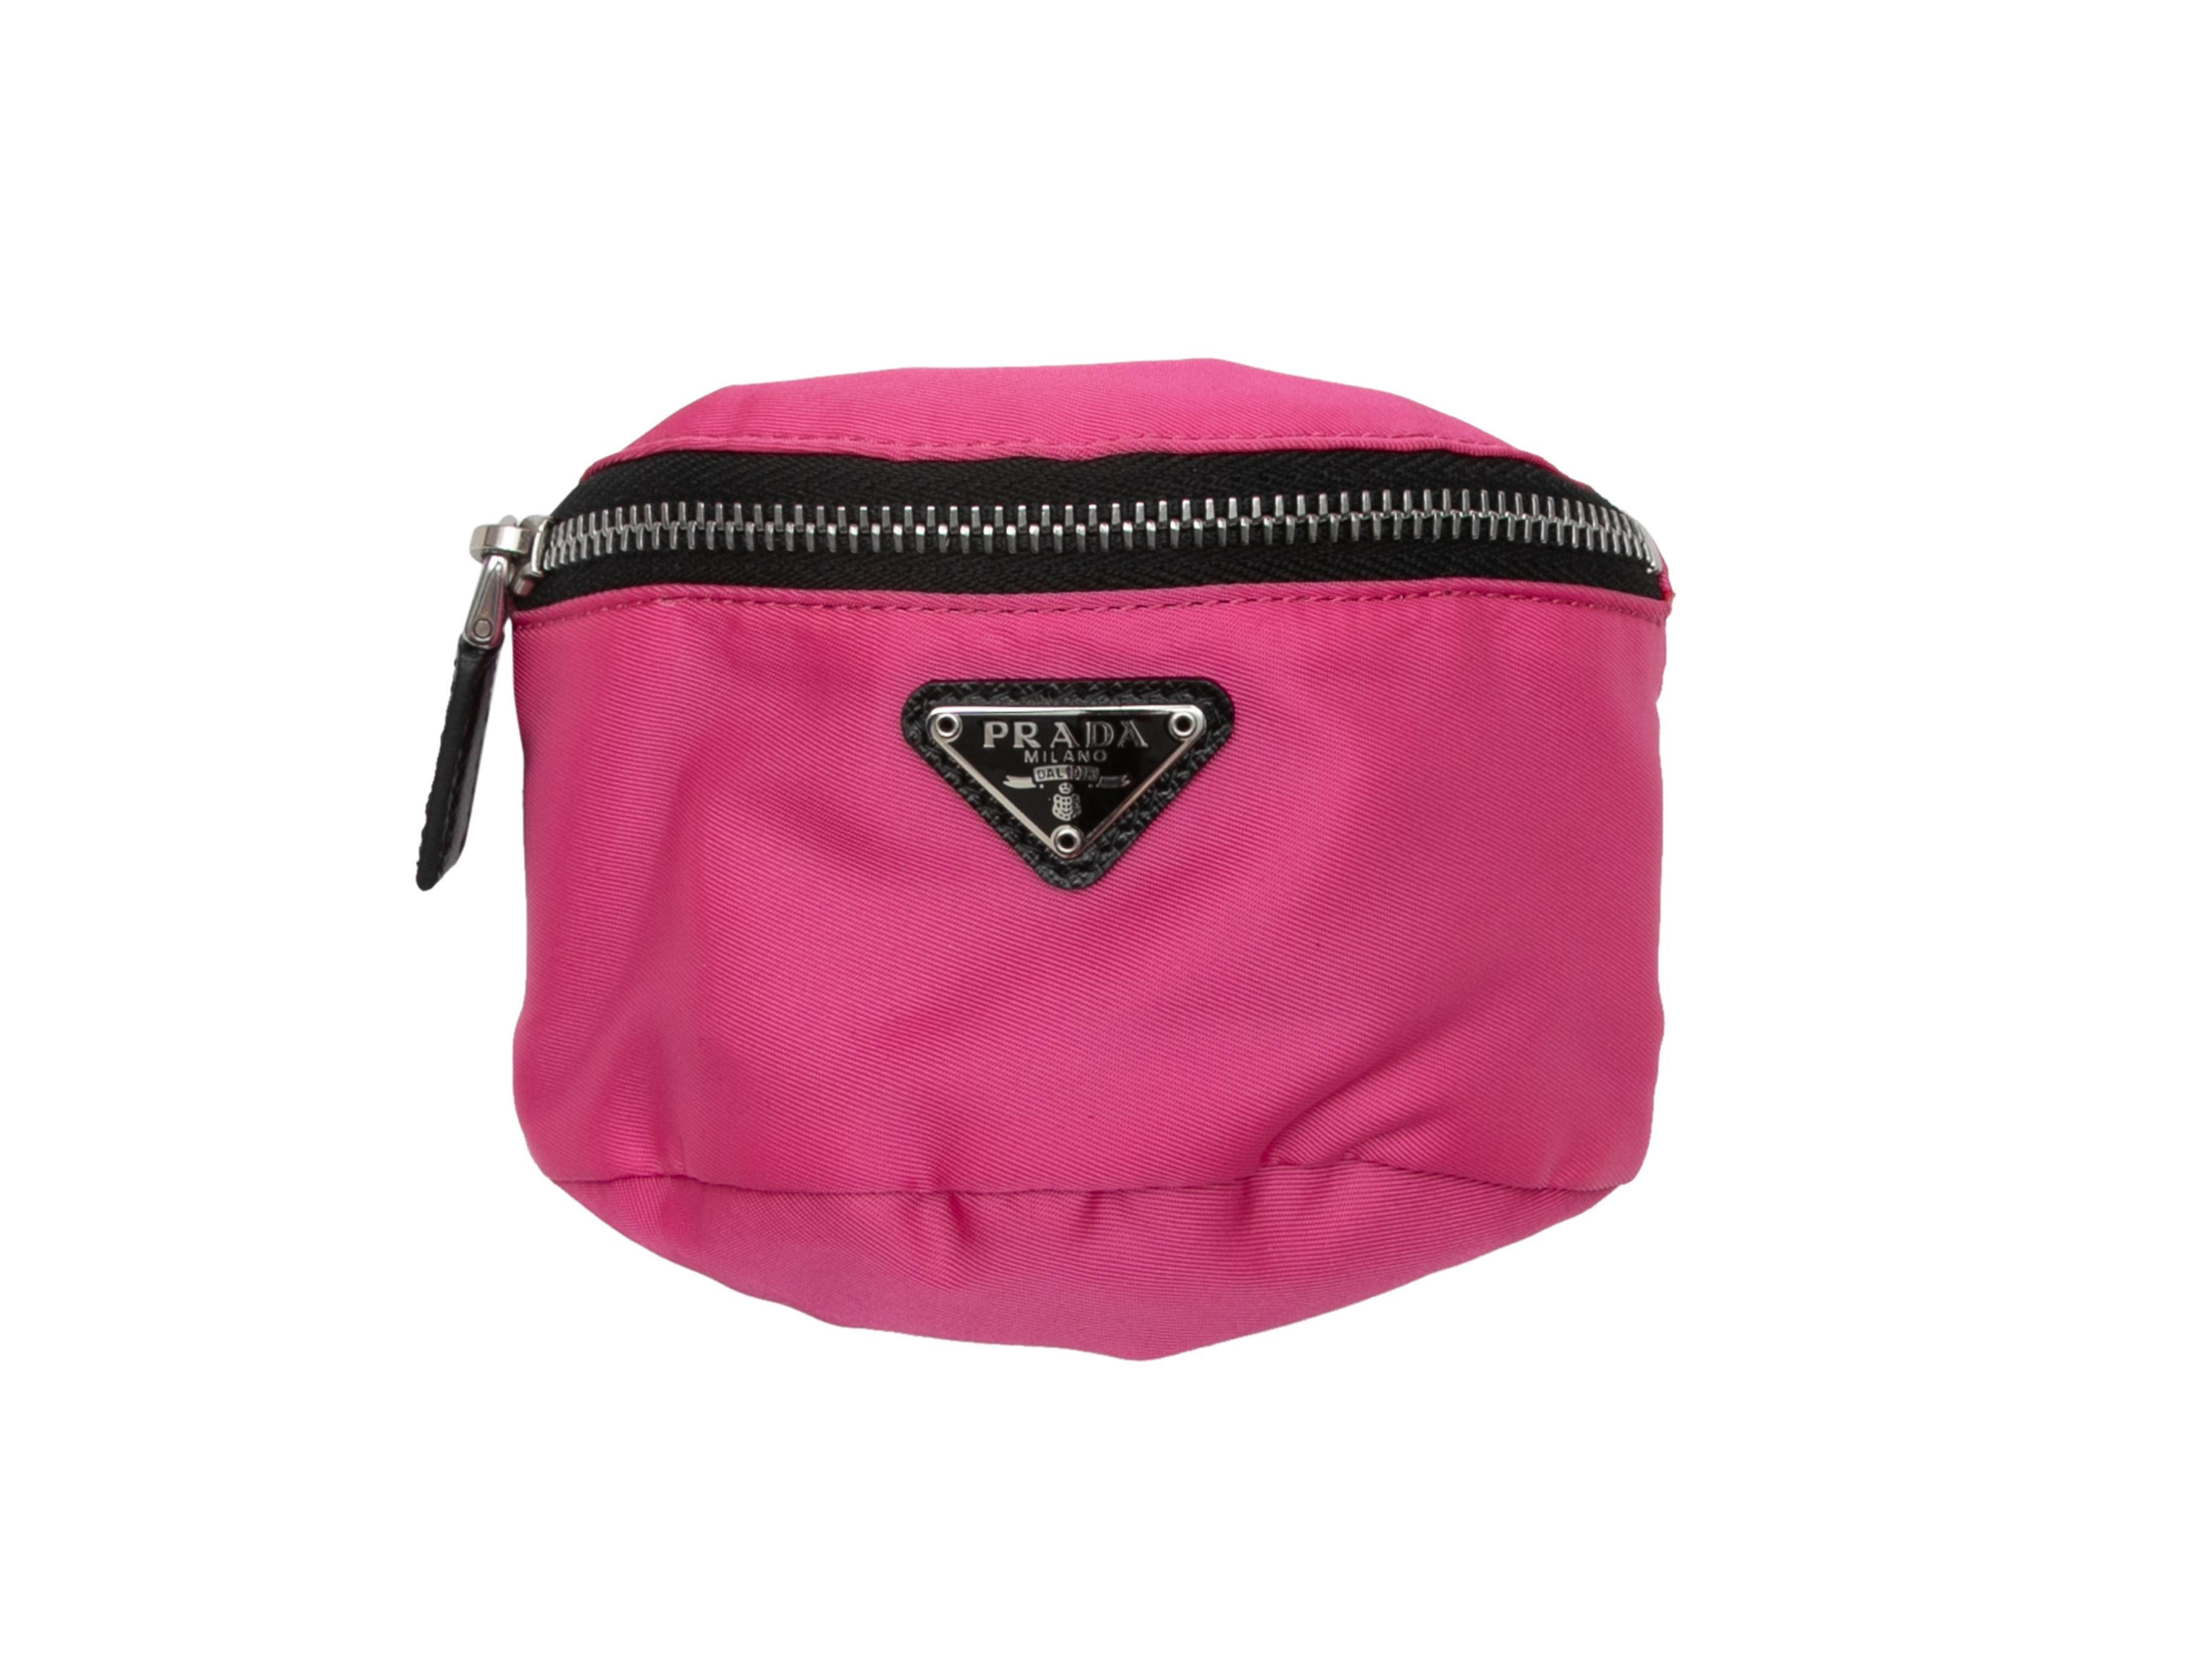 Rosa-schwarze Re-Nylon-Handtasche von Prada. Einstellbares Band. Reißverschluss. 4